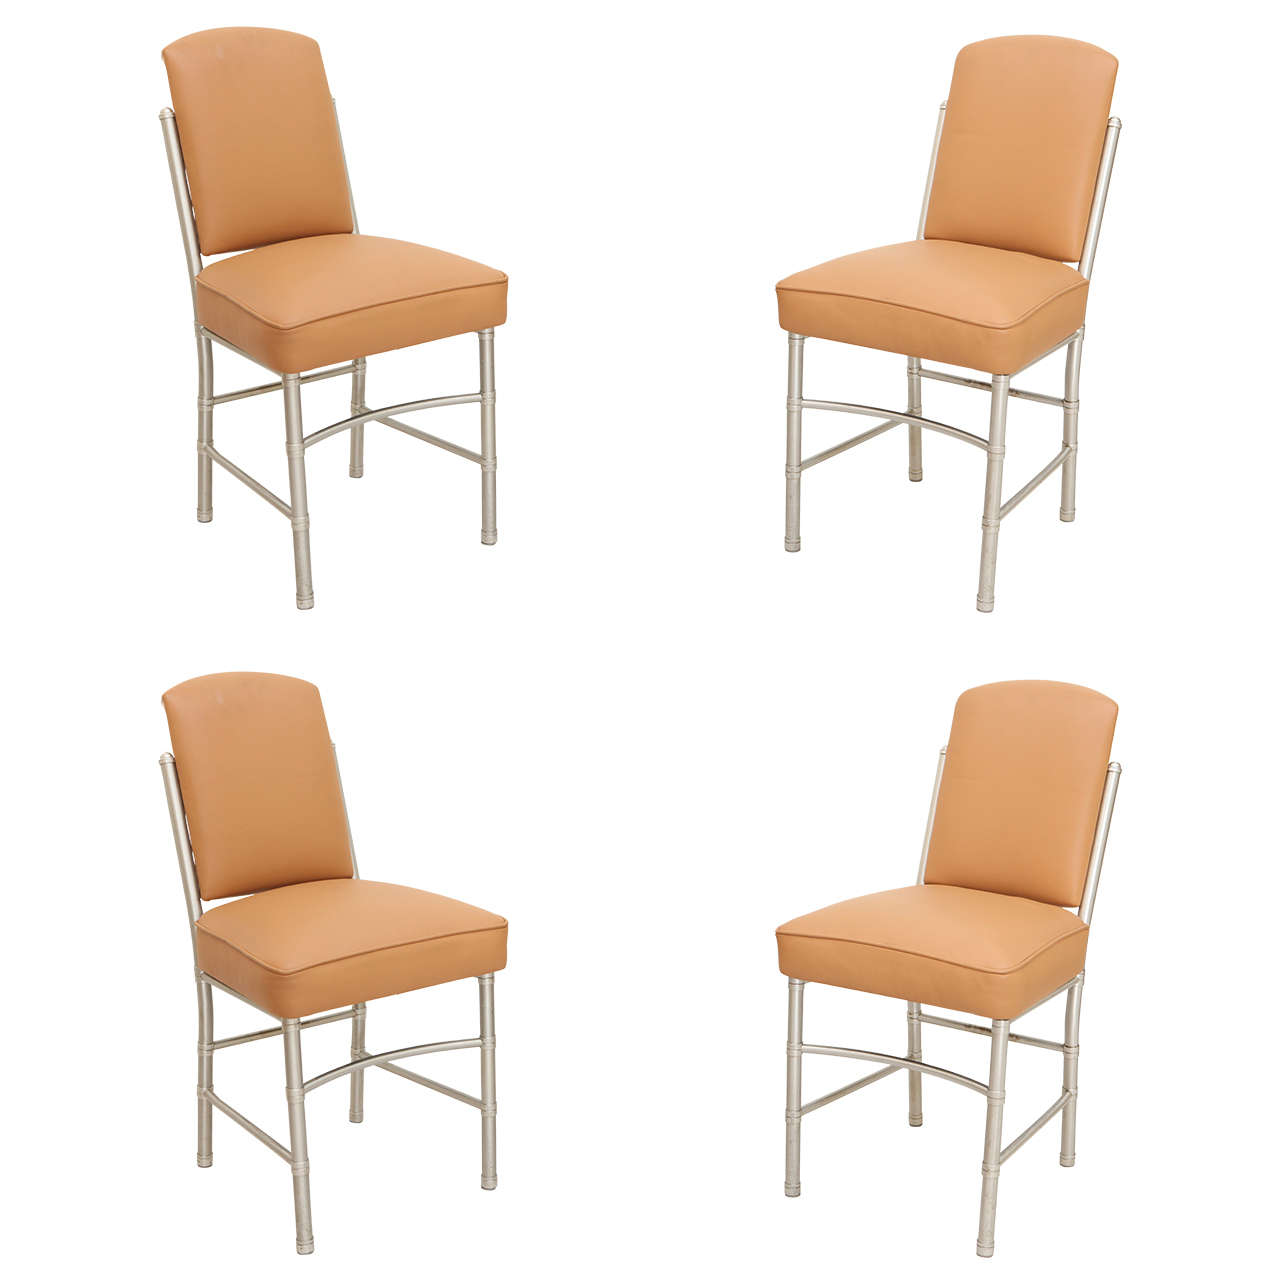 Warren McArthur Dining Chairs